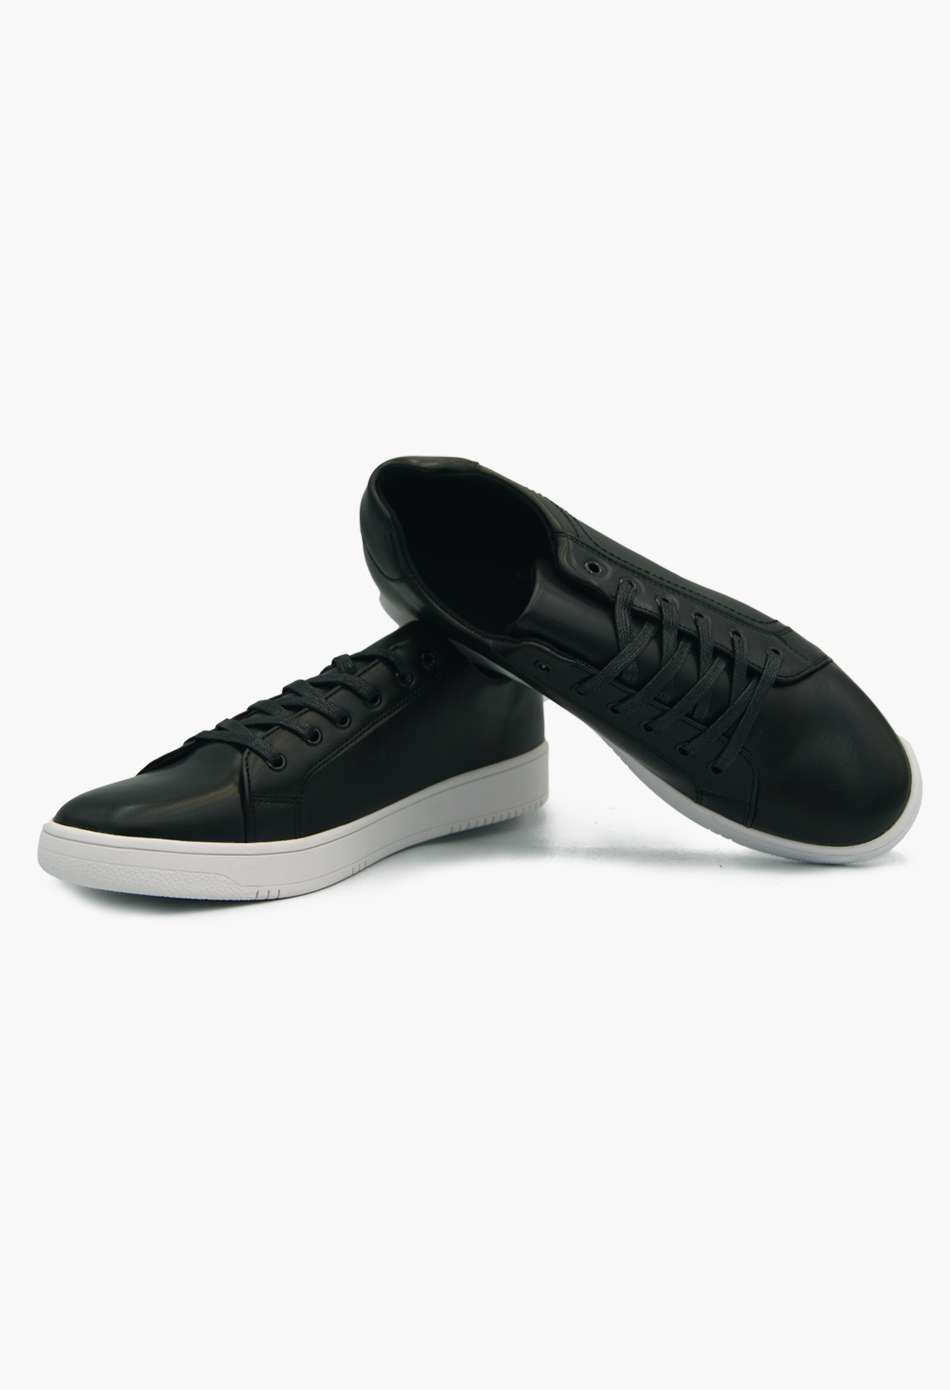 Ανδρικά Casual Sneakers Μαύρα / L22210-black ΑΘΛΗΤΙΚΑ & SNEAKERS joya.gr